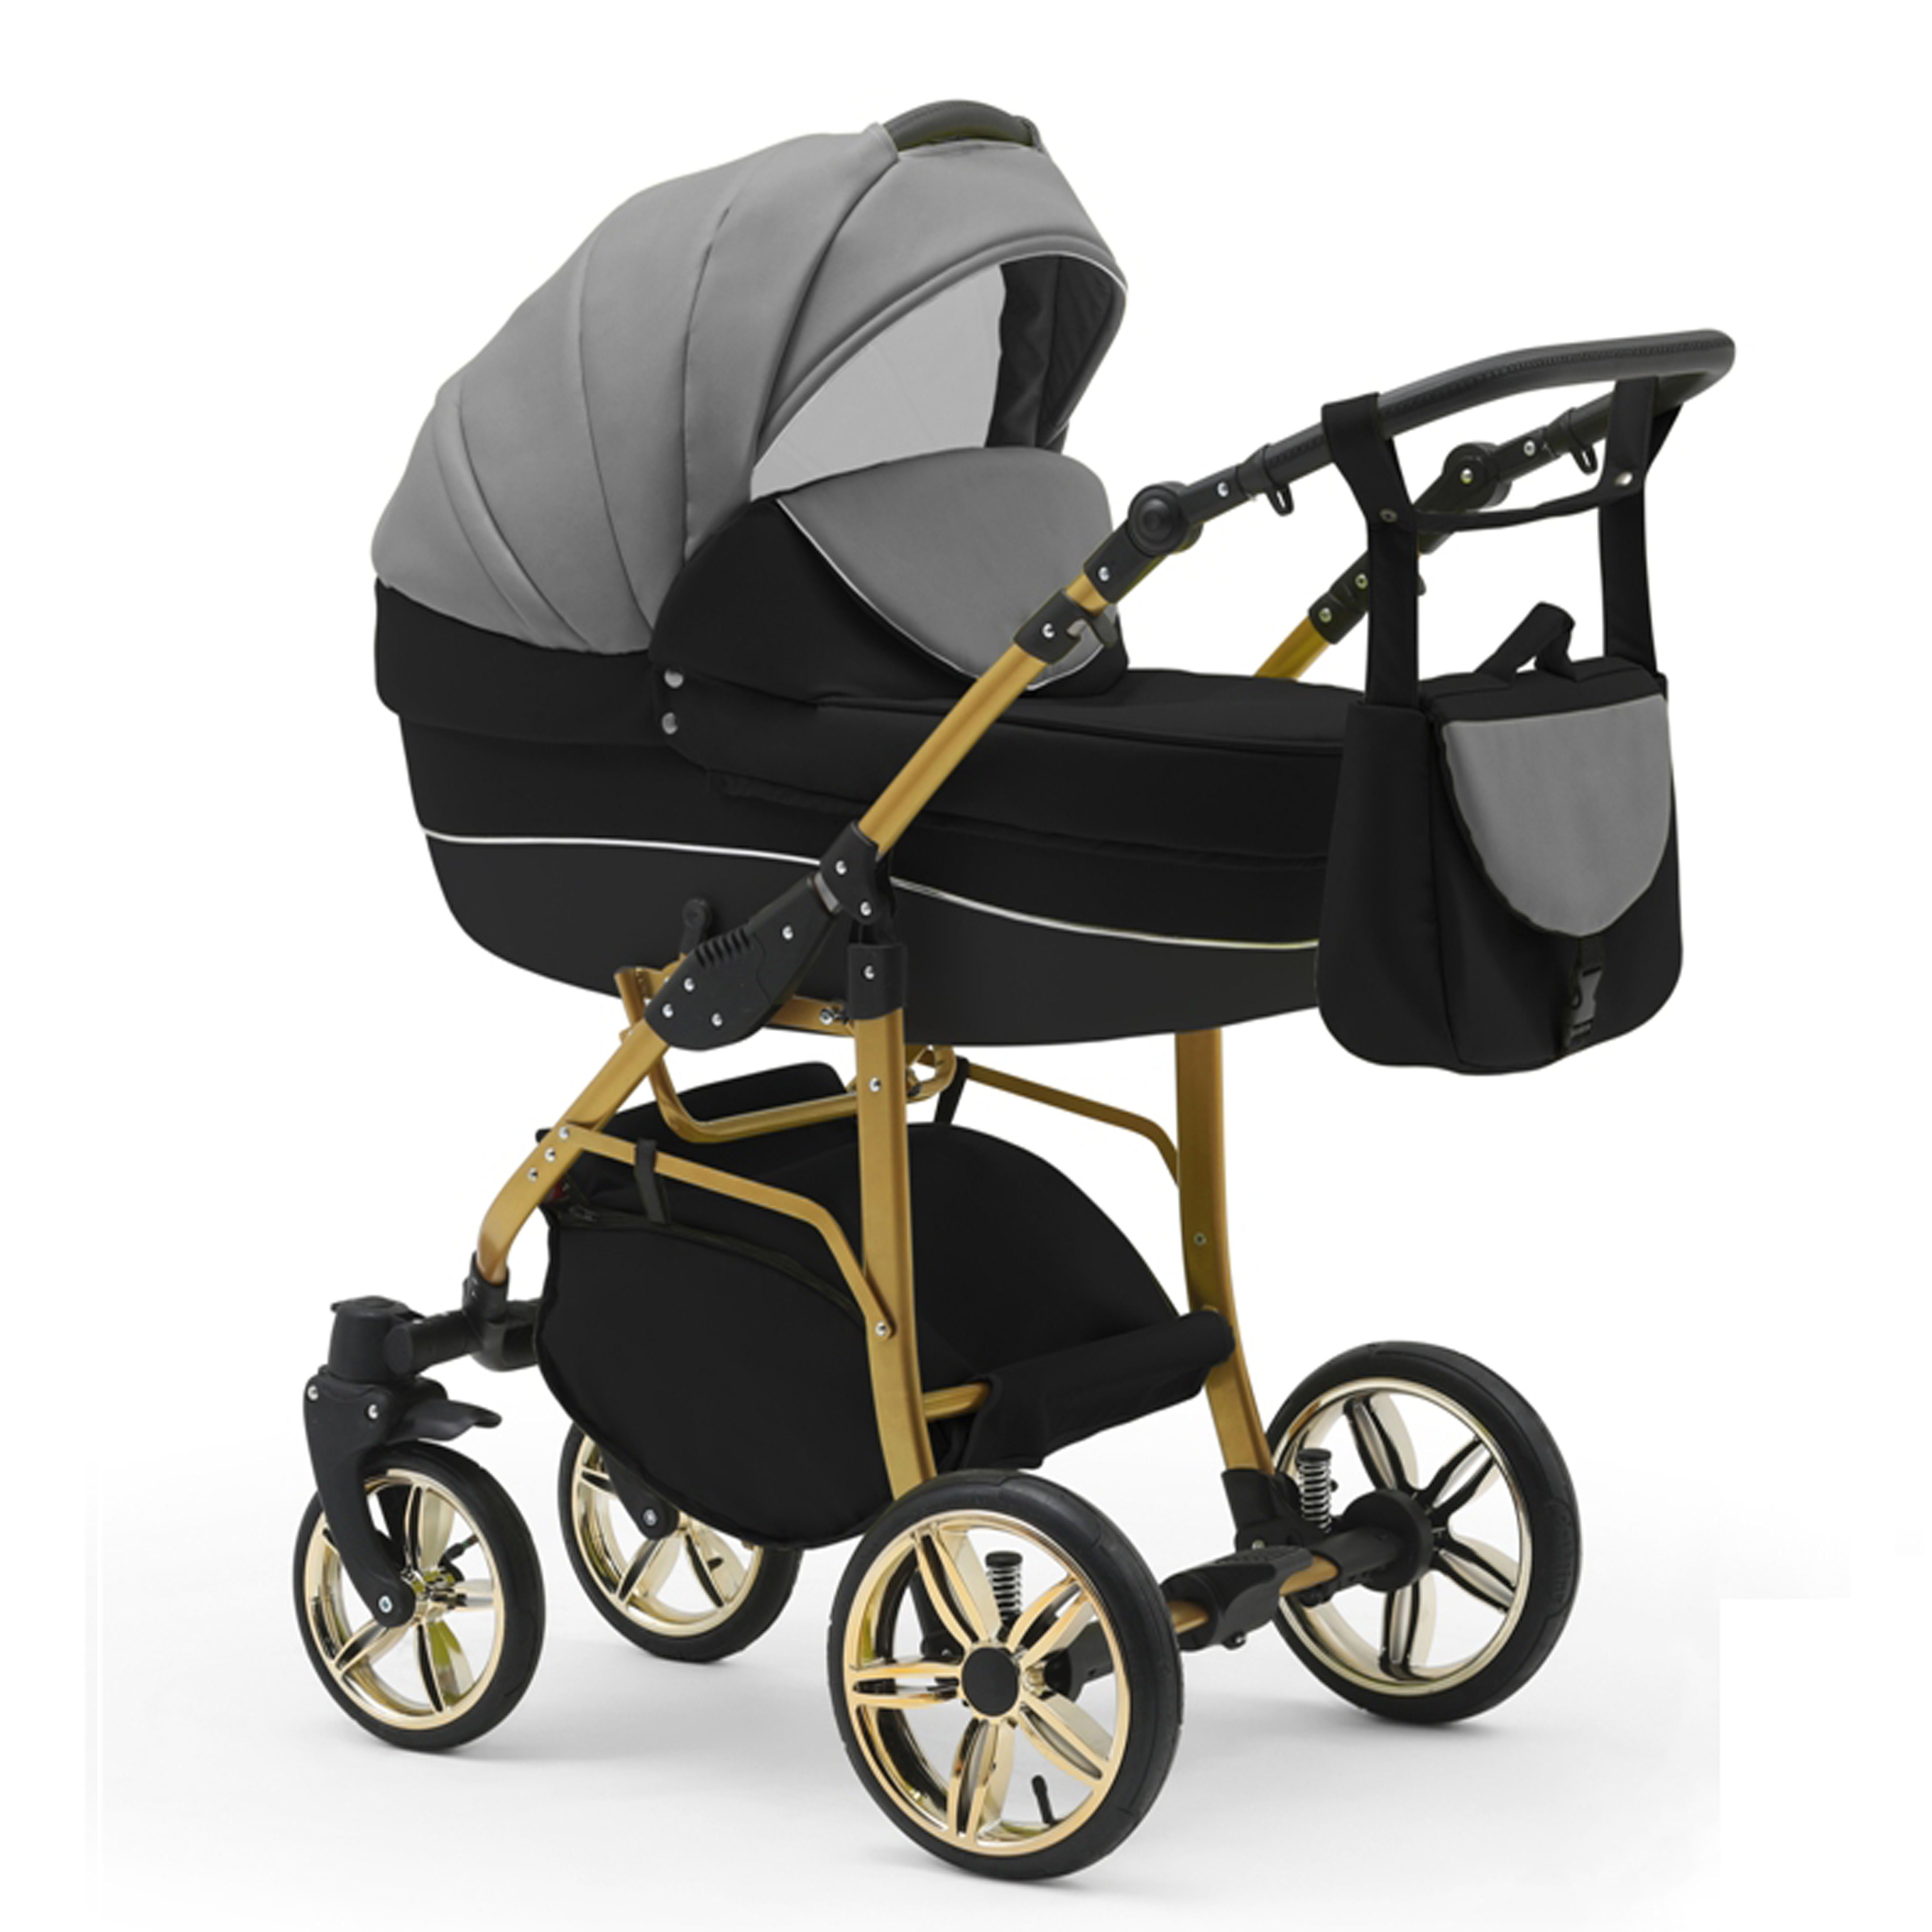 Kinderwagen-Set Gold babies-on-wheels 13 1 in Cosmo in Grau-Schwarz-Schwarz - 46 Farben Teile - Kombi-Kinderwagen 2